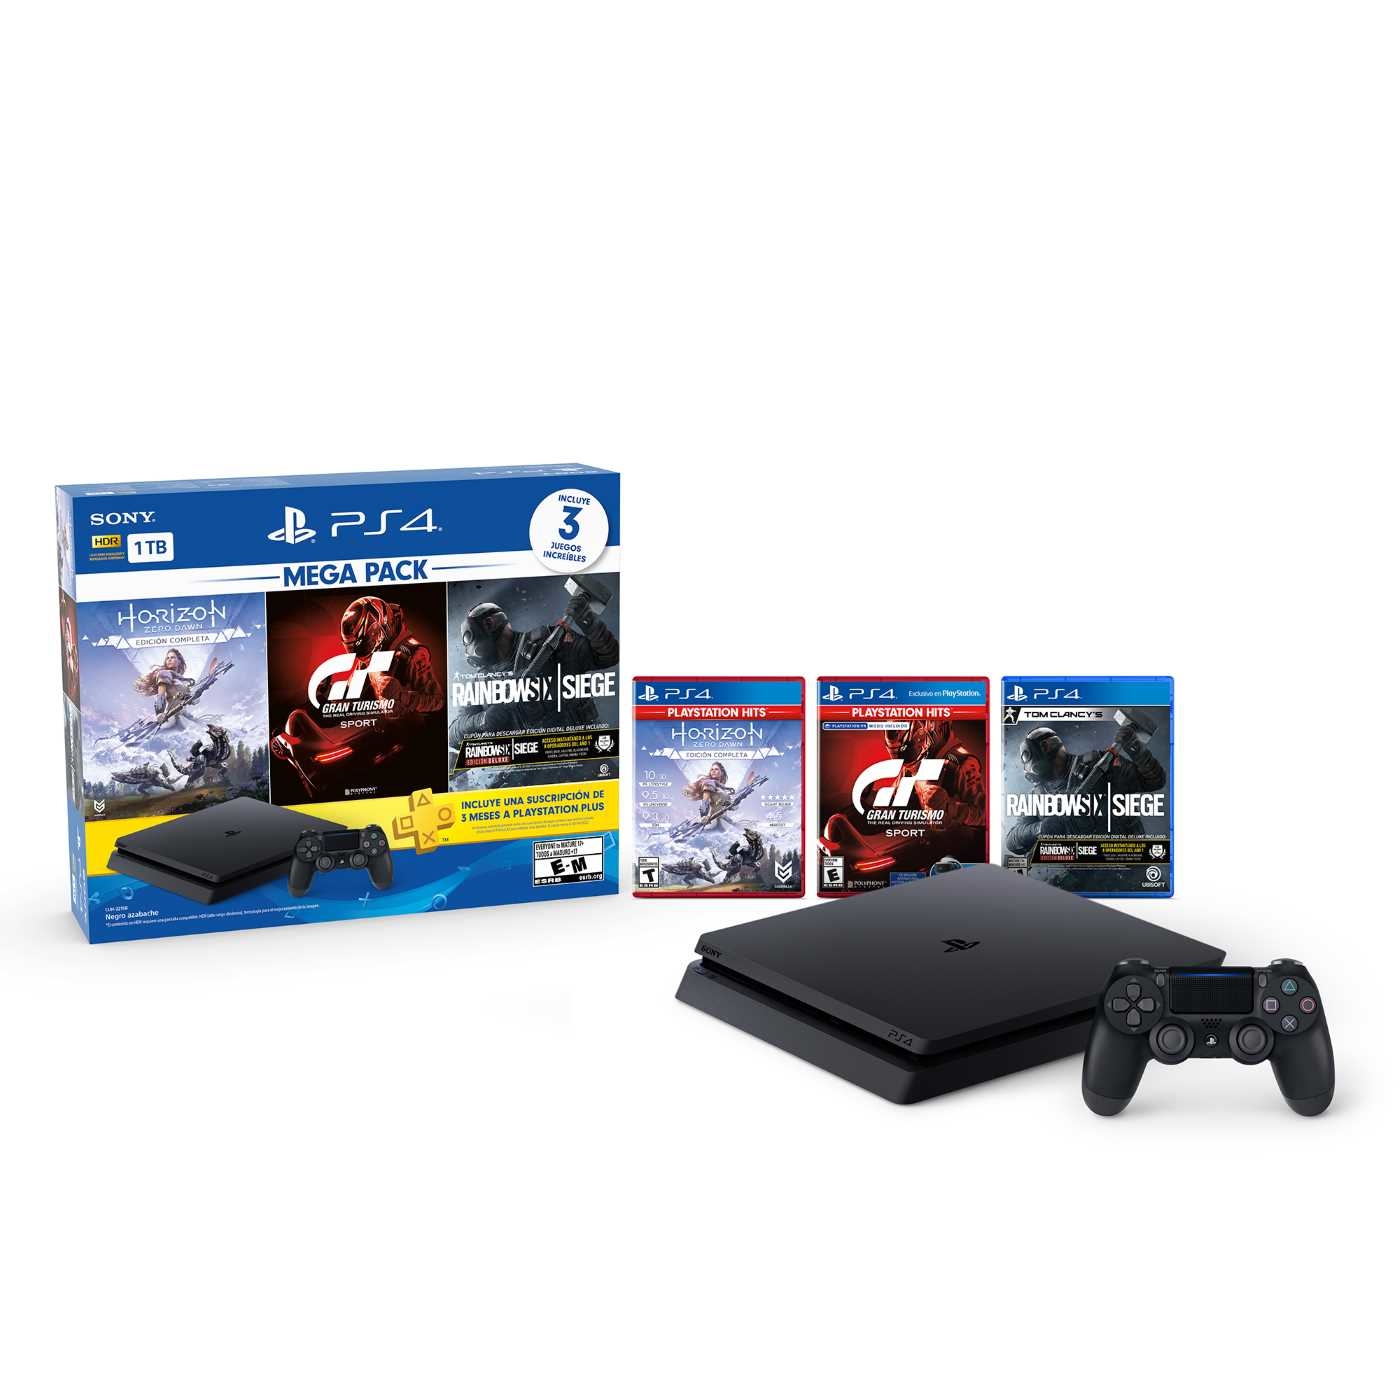 Consola PS4 Megapack 1 Tera + 1 Control + 3 Juegos + Suscripción de 3 Meses a PlayStation Plus